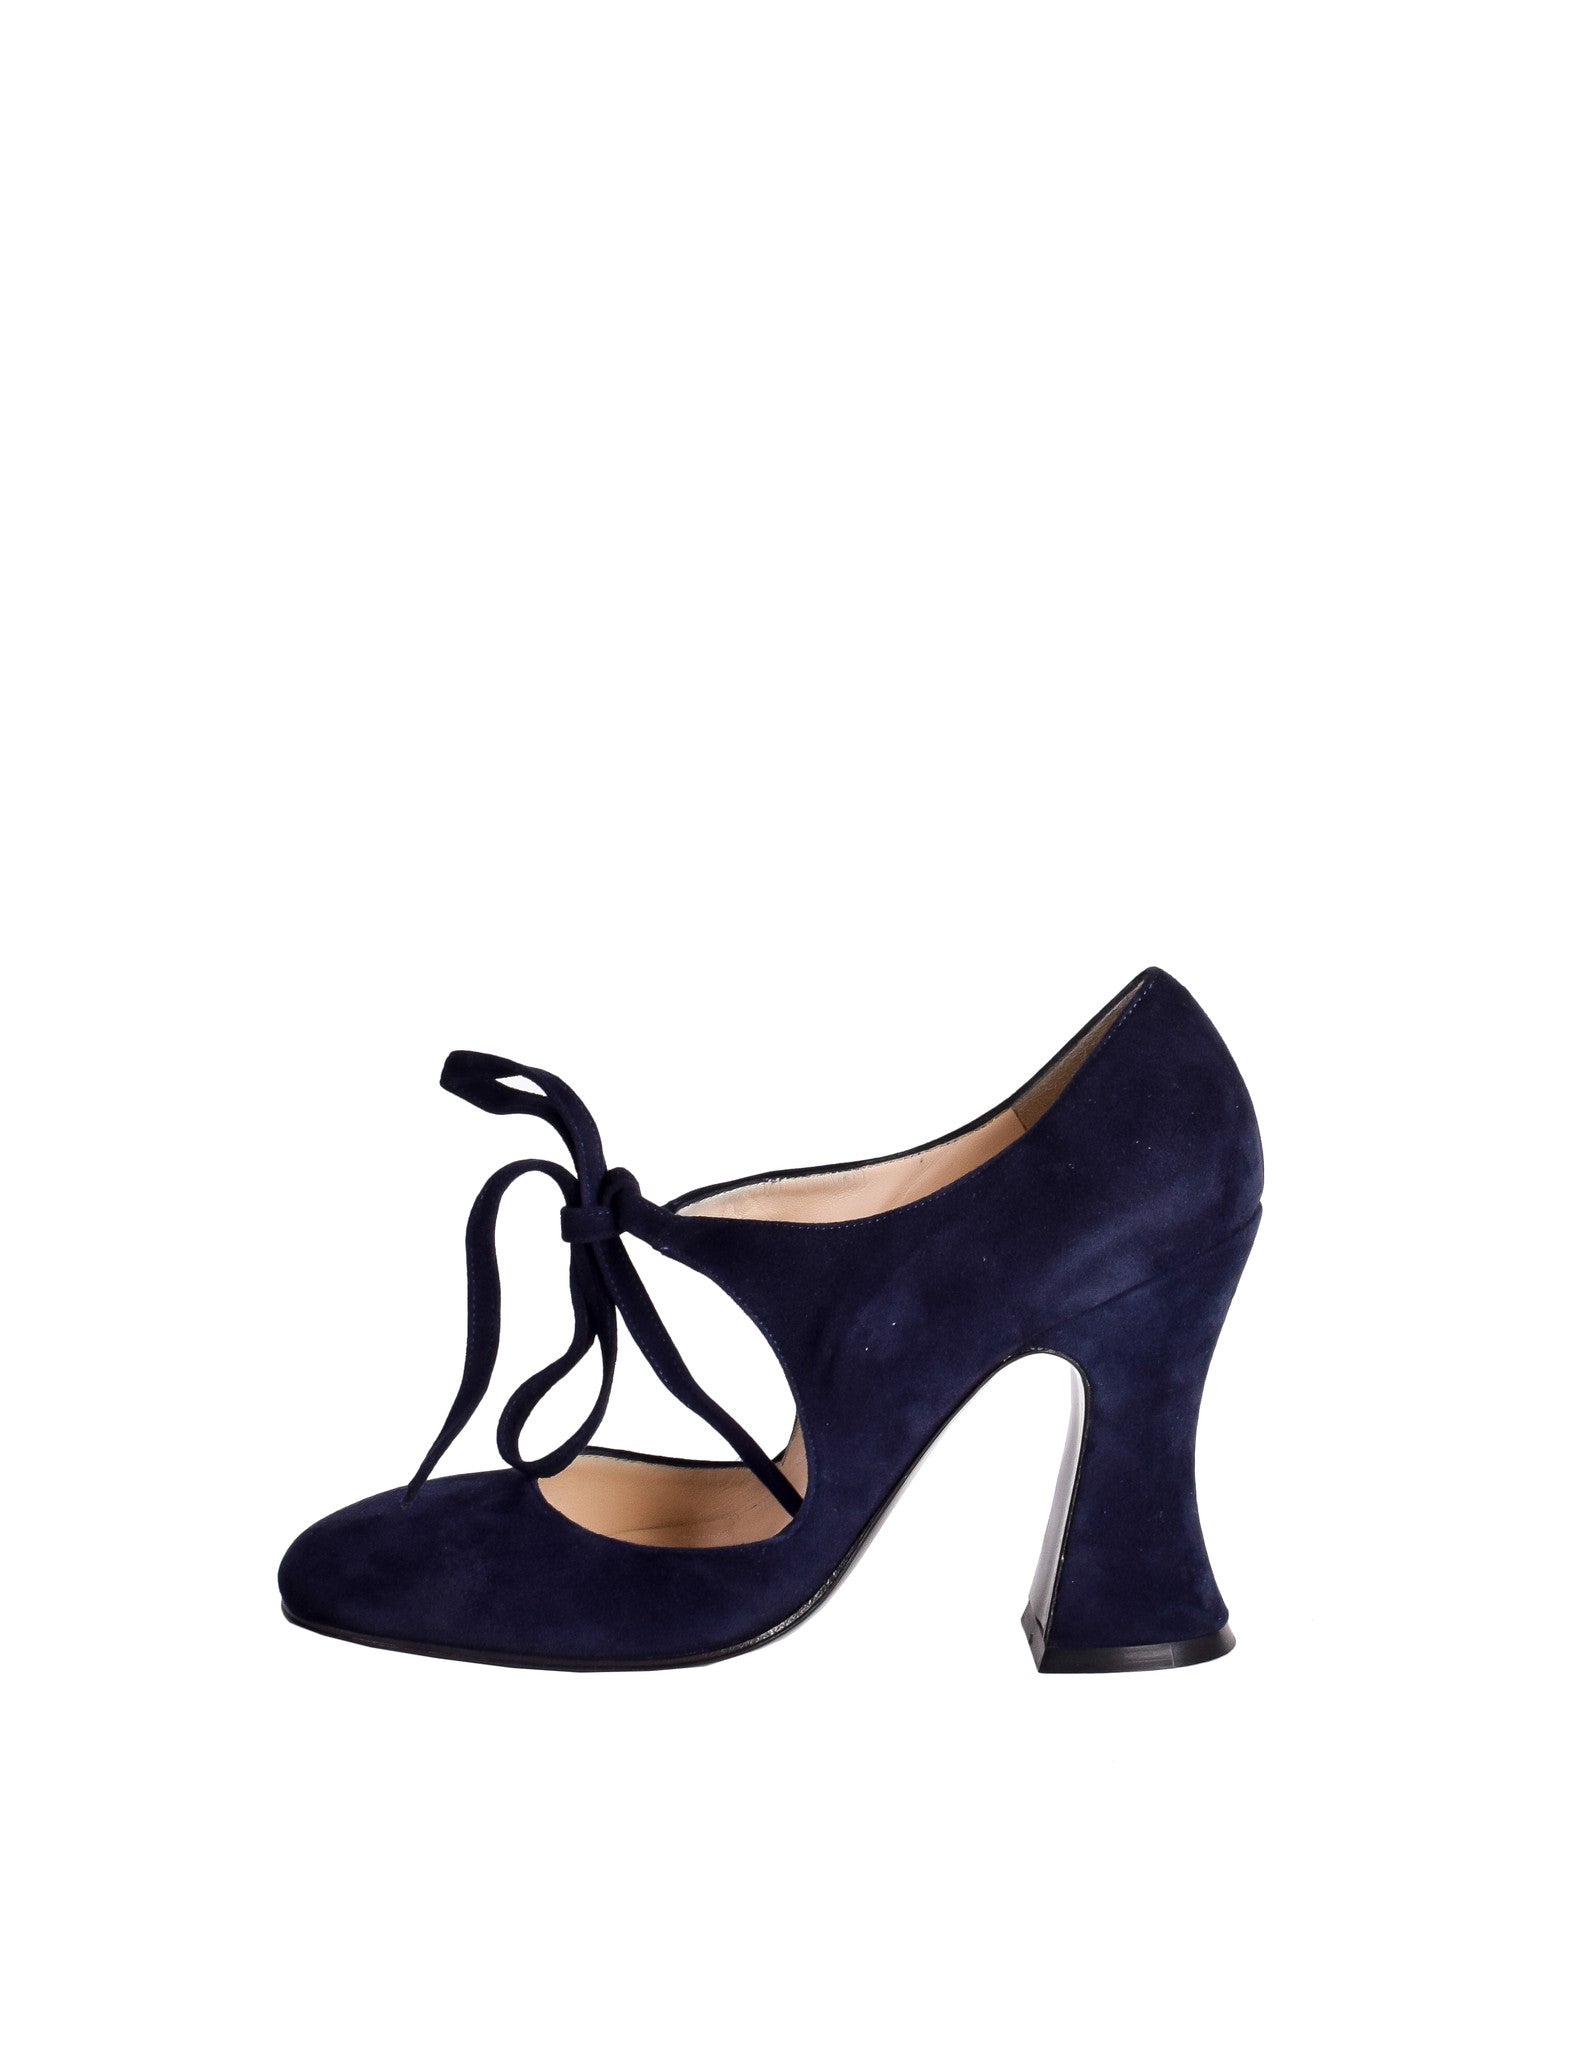 navy blue mary jane heels